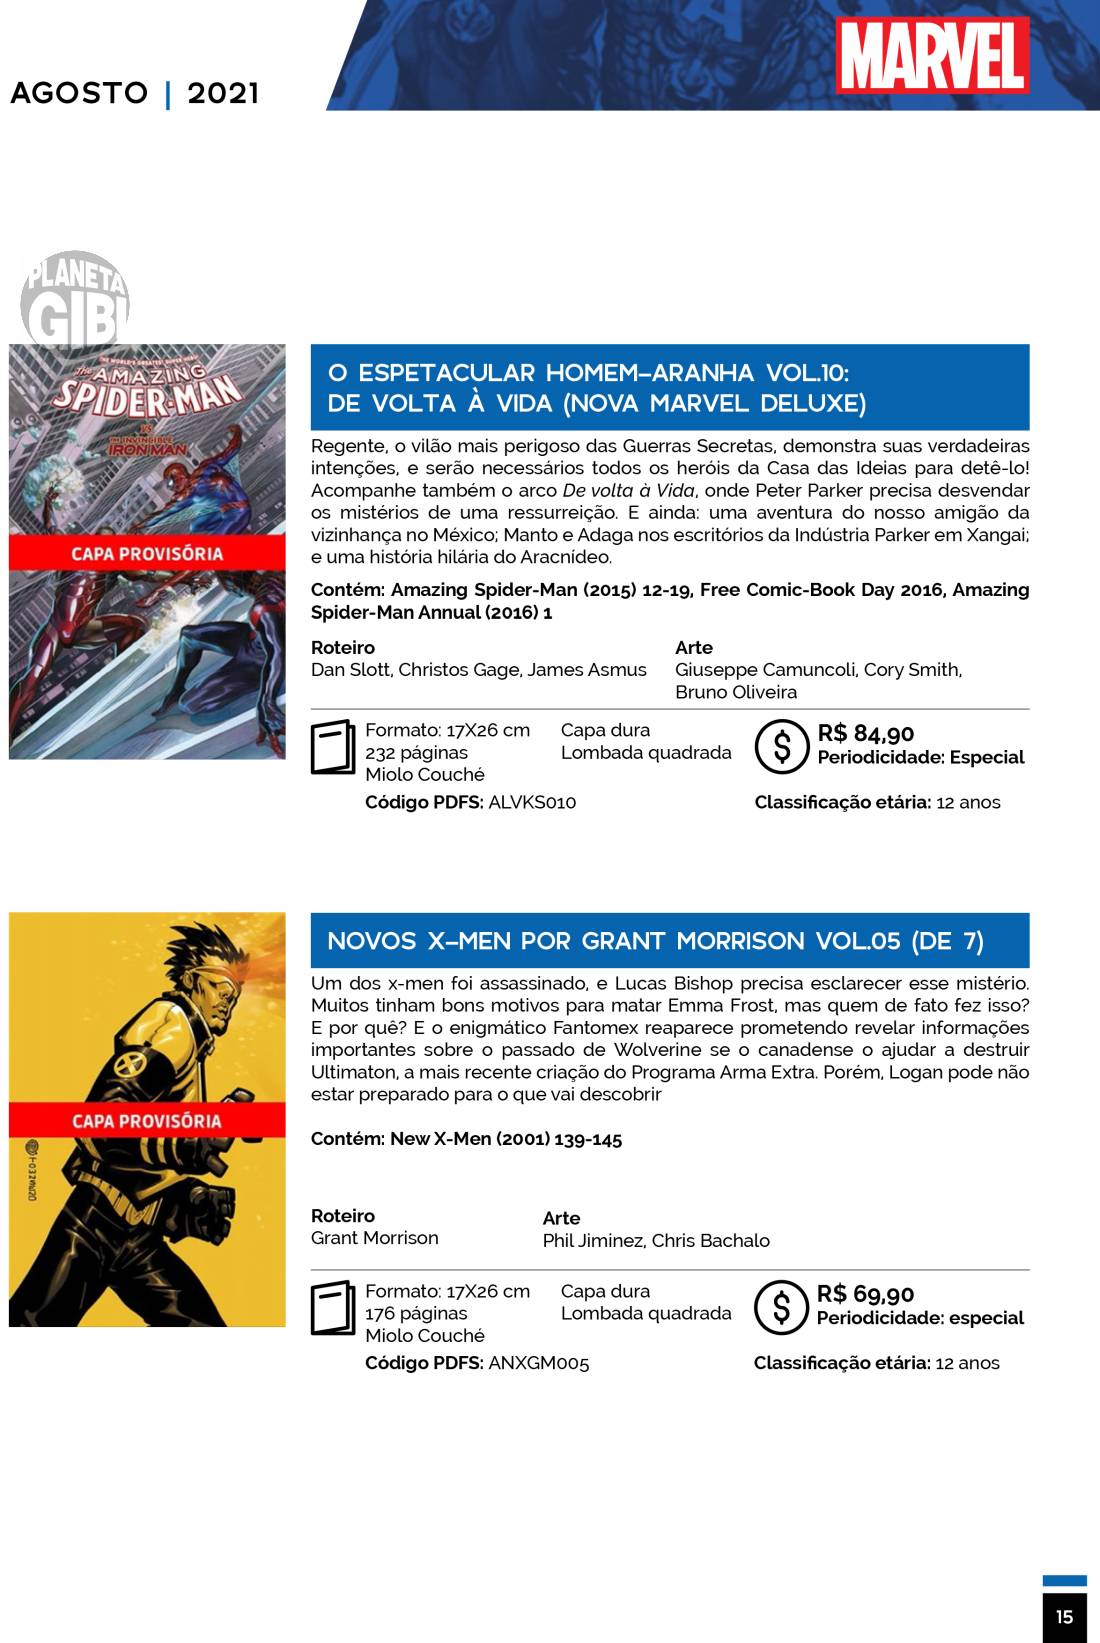 1 - Checklist Marvel/Panini (Julho/2020 - pág.09) - Página 9 Catalogo-Julho-Agosto-15